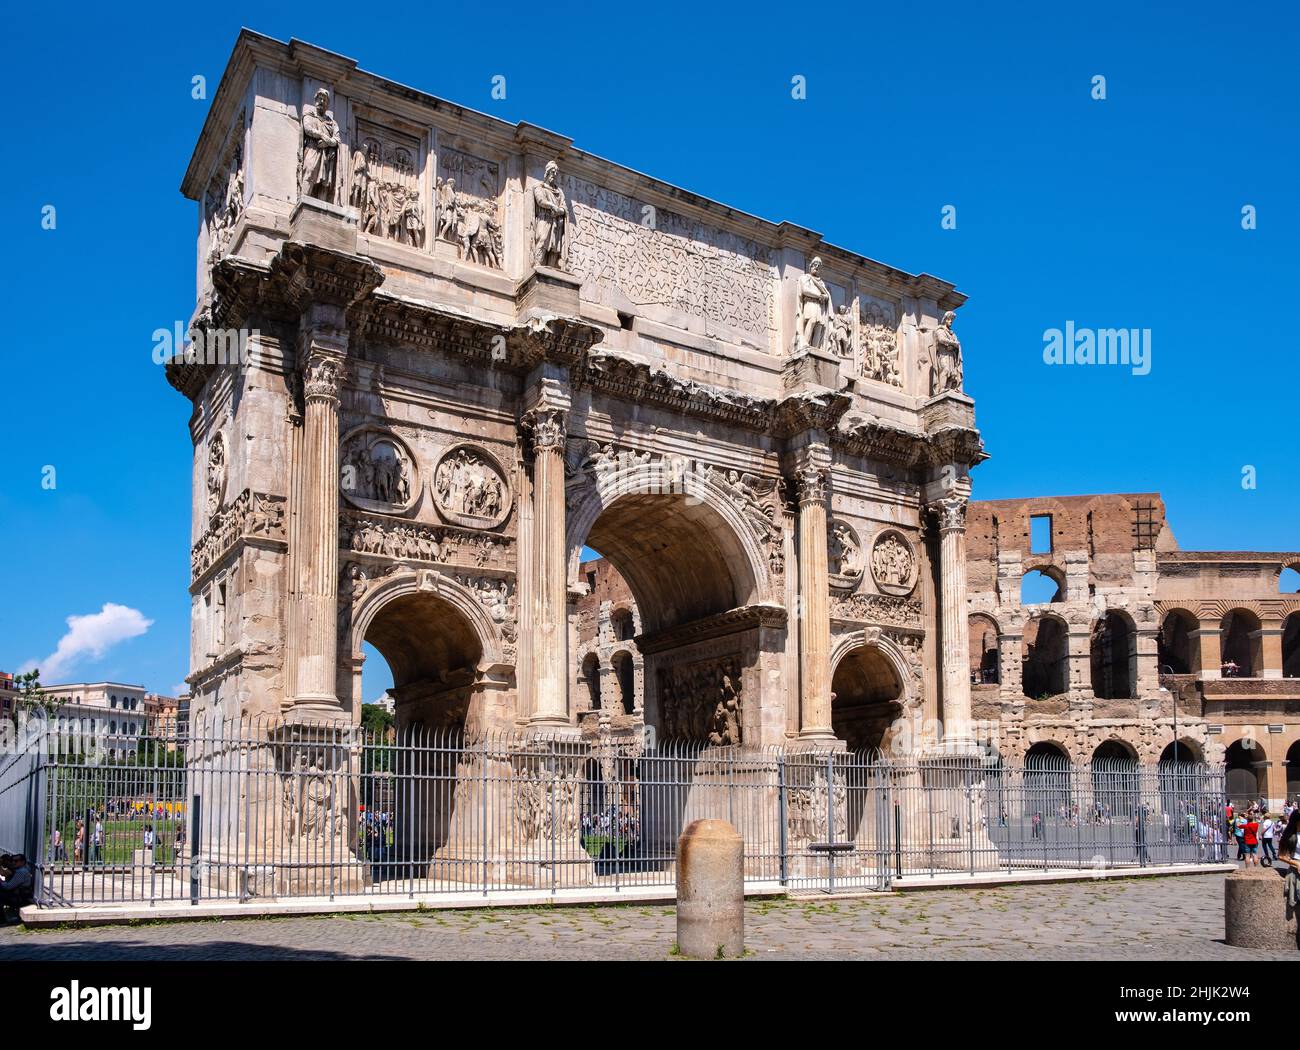 Roma, Italia - 25 maggio 2018: Arco di Costantino il Grande imperatore Arco di Costantino tra il Colosseo e il Colle Palatino in Via Triumphalis Foto Stock